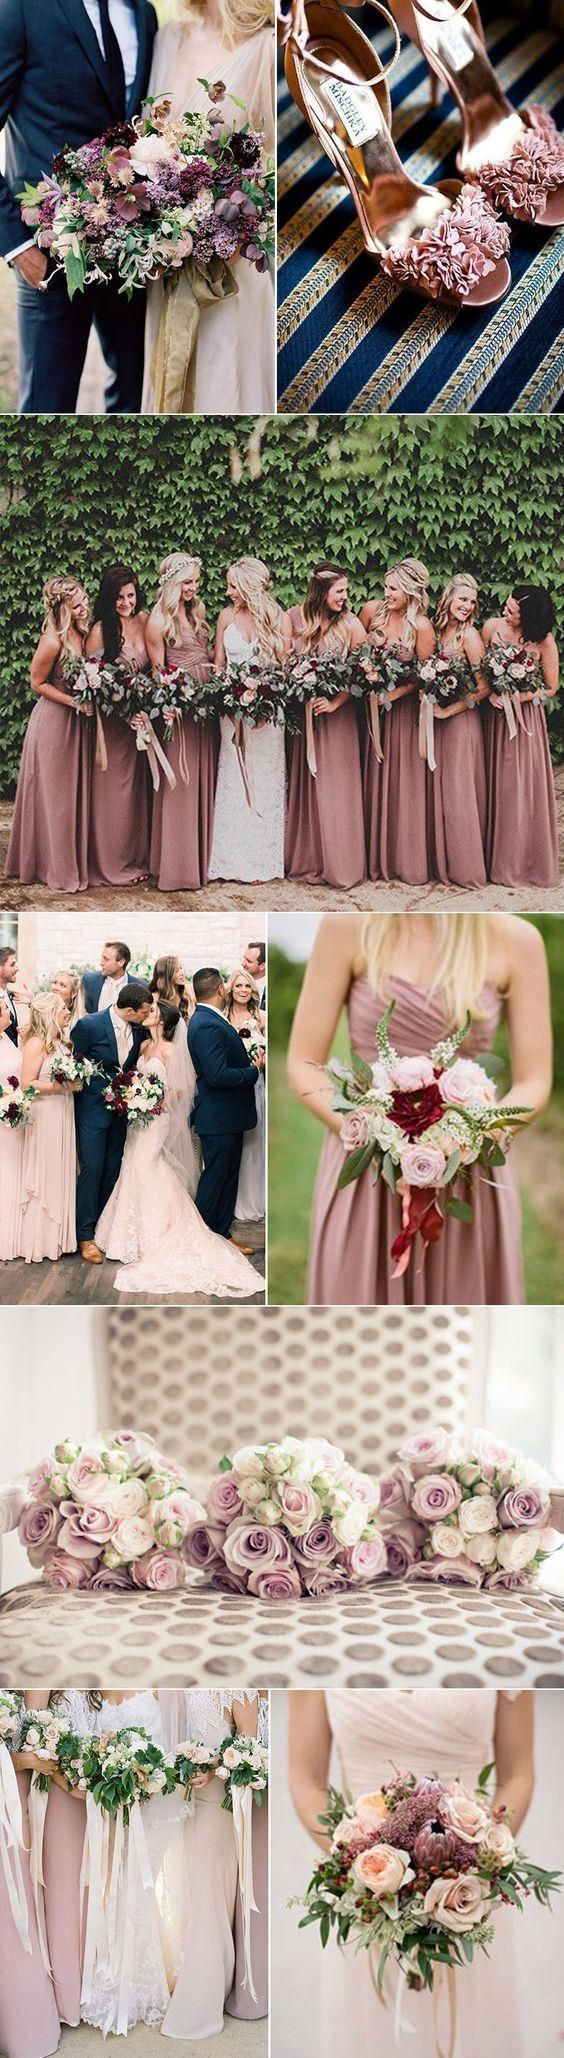 Wedding Color Schemes For Spring
 Best 450 Spring Wedding Color Schemes images on Pinterest